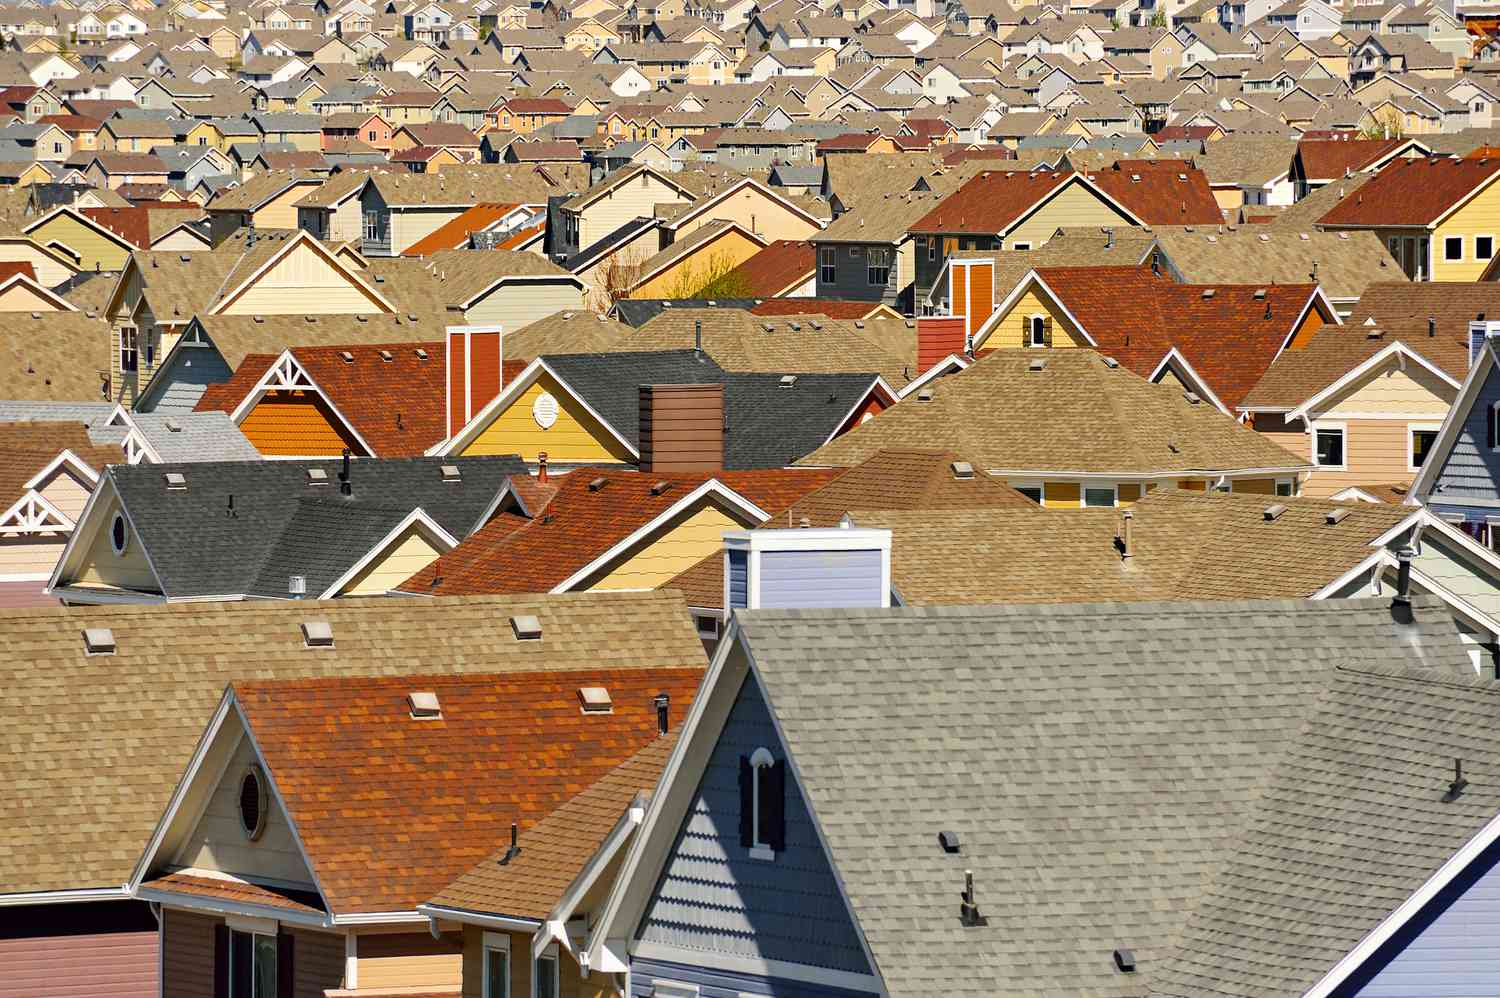 Tejados en urbanización suburbana, Colorado Springs, Colorado, Estados Unidos